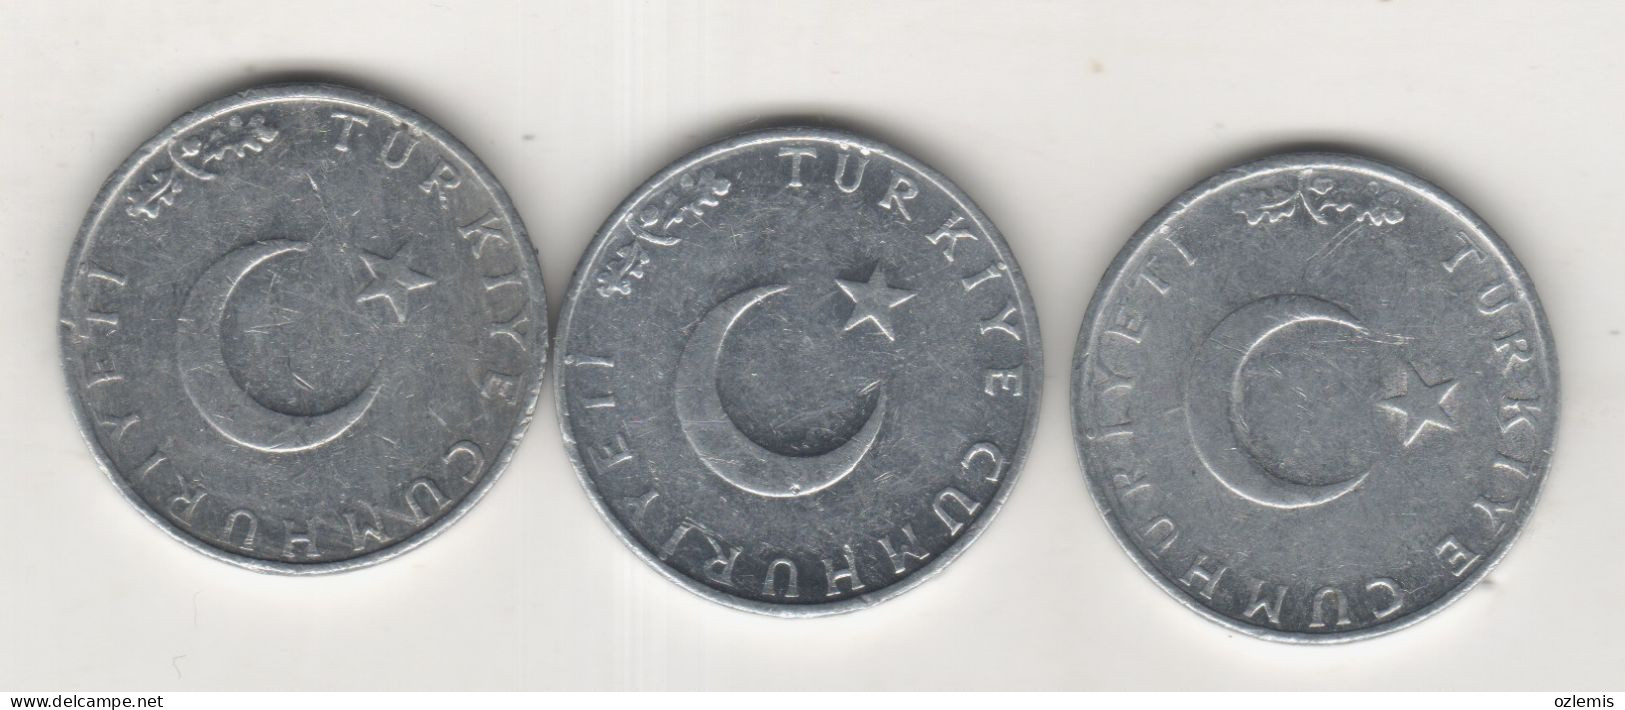 TURKEY,TURKEI,TURQUIE ,1975-76-77,10 KURUS - Turkey